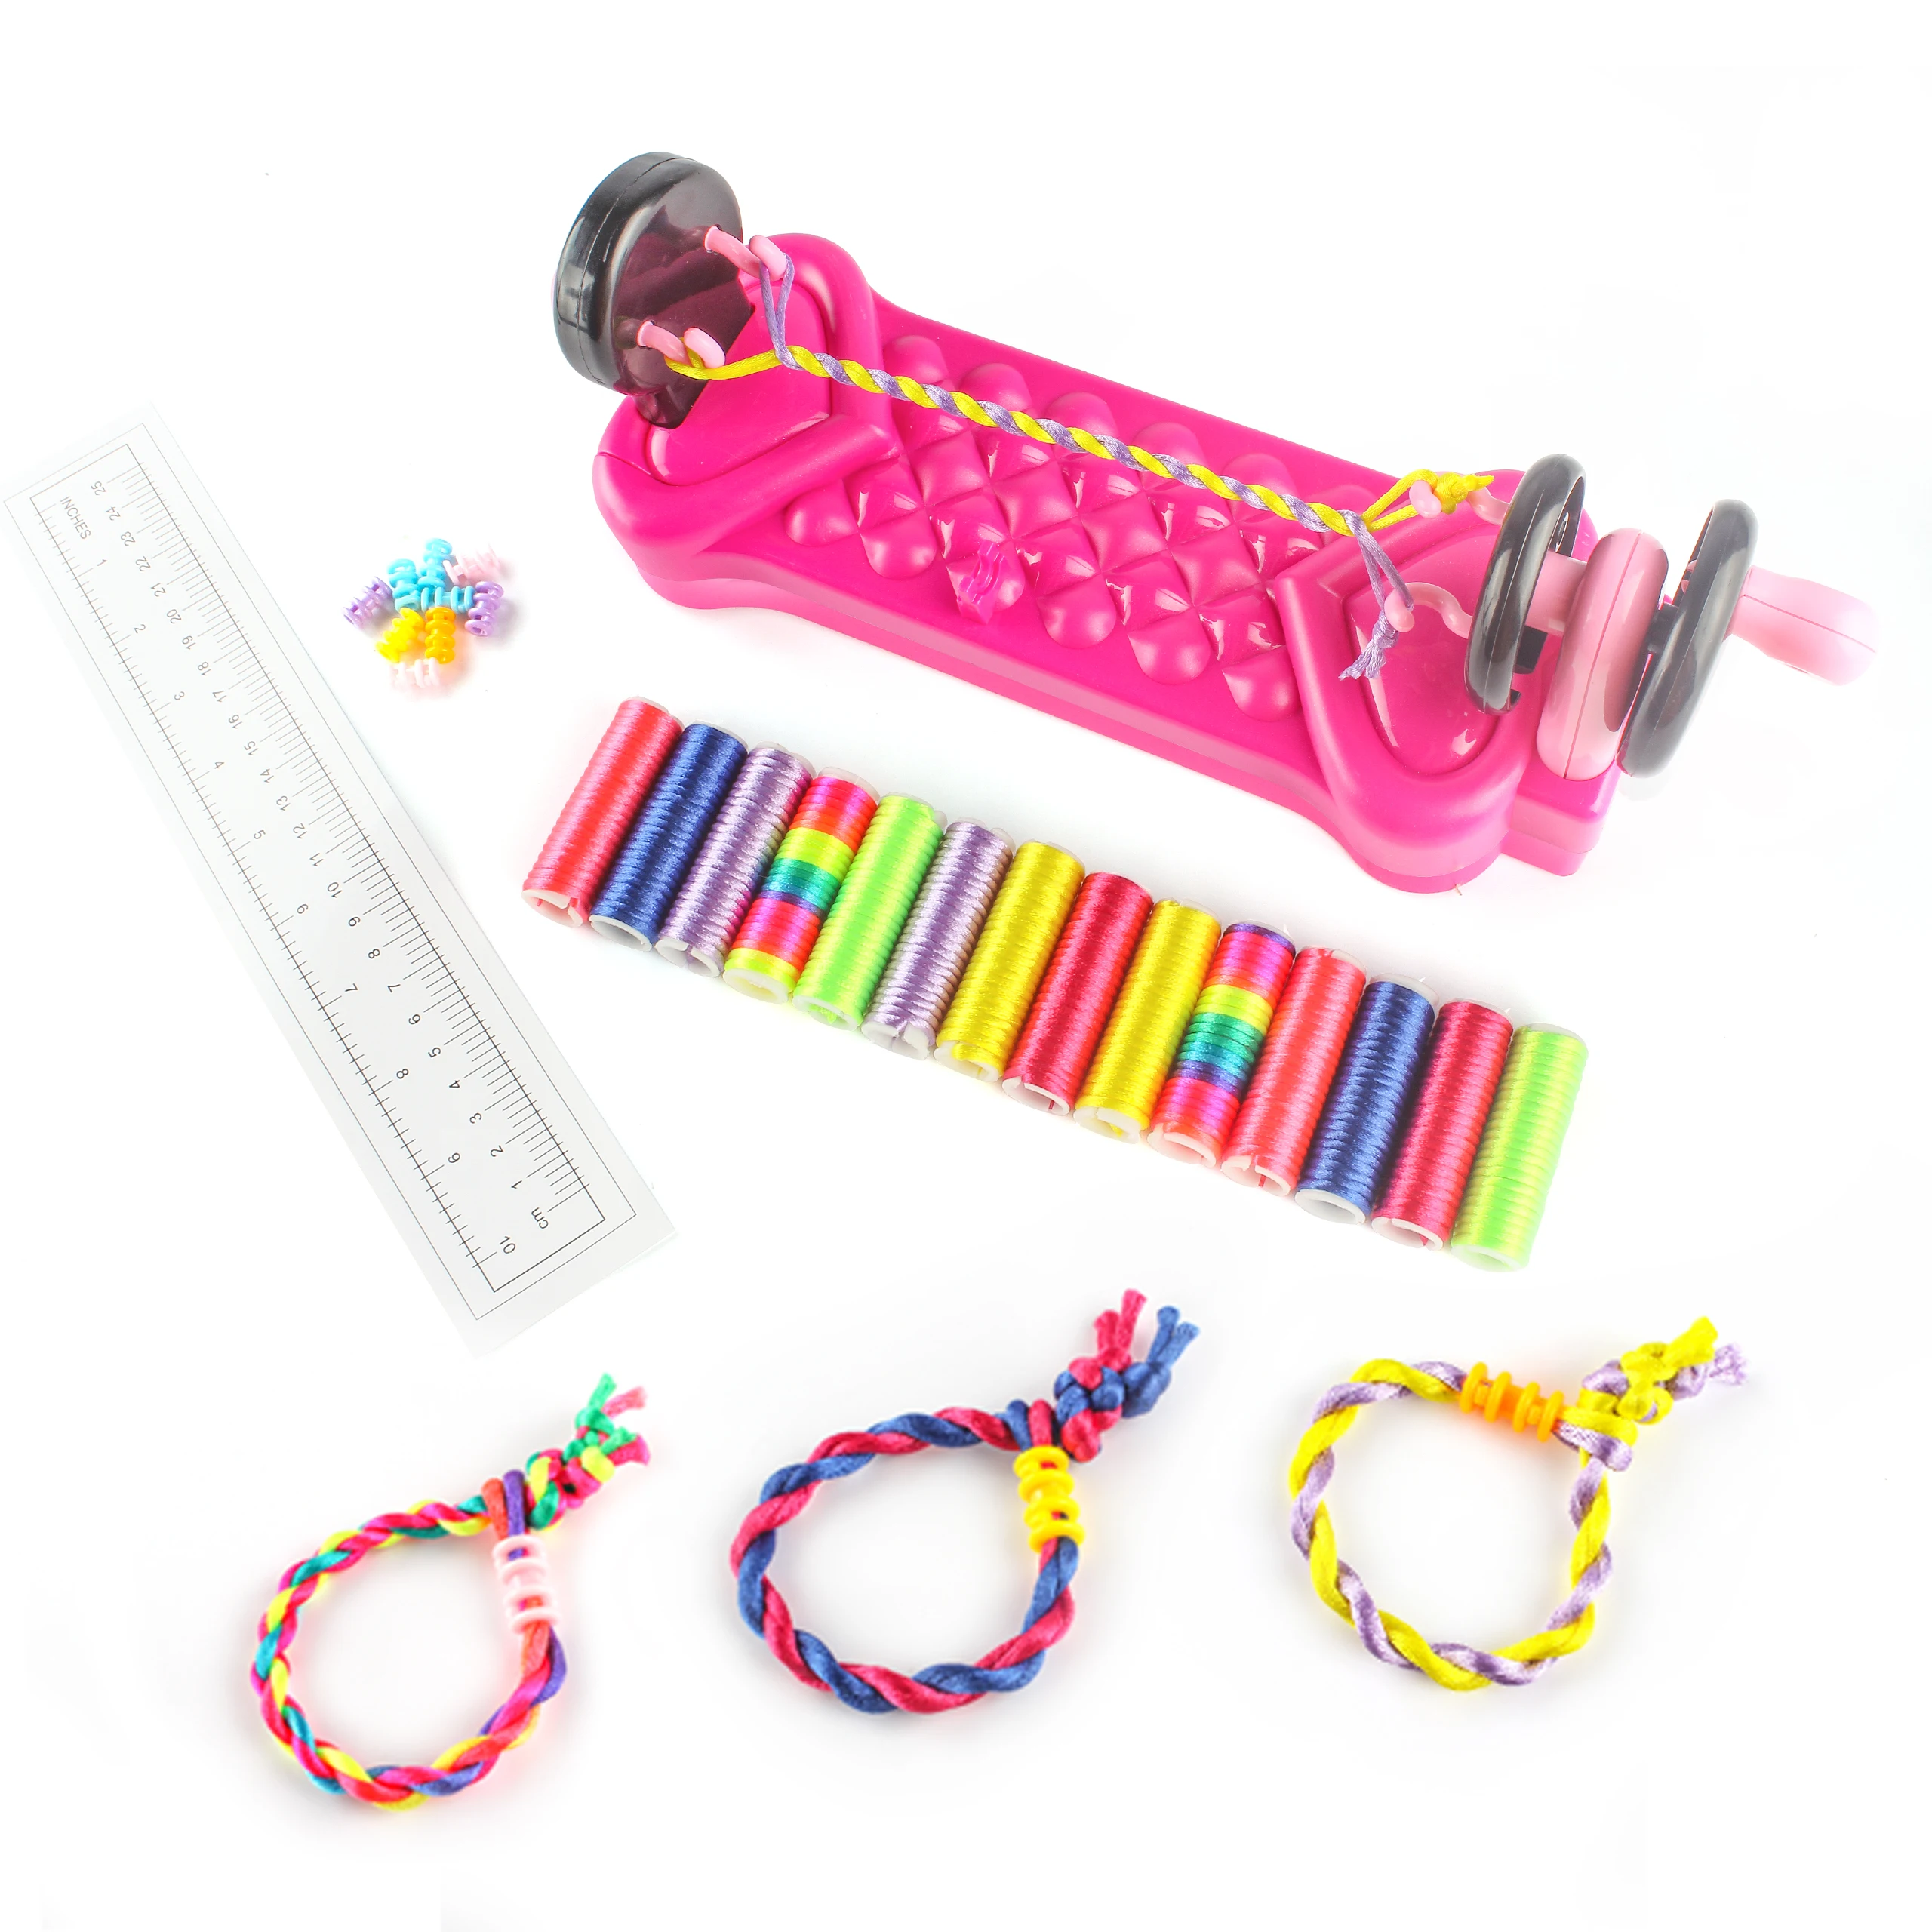 Multicolore Perle Accessoire de Cheveux Fille Machine a Tresser Les Cheveux Kit Coiffure pour 5 6 7 8 9 Ans Enfants Meilleurs Cadeaux 